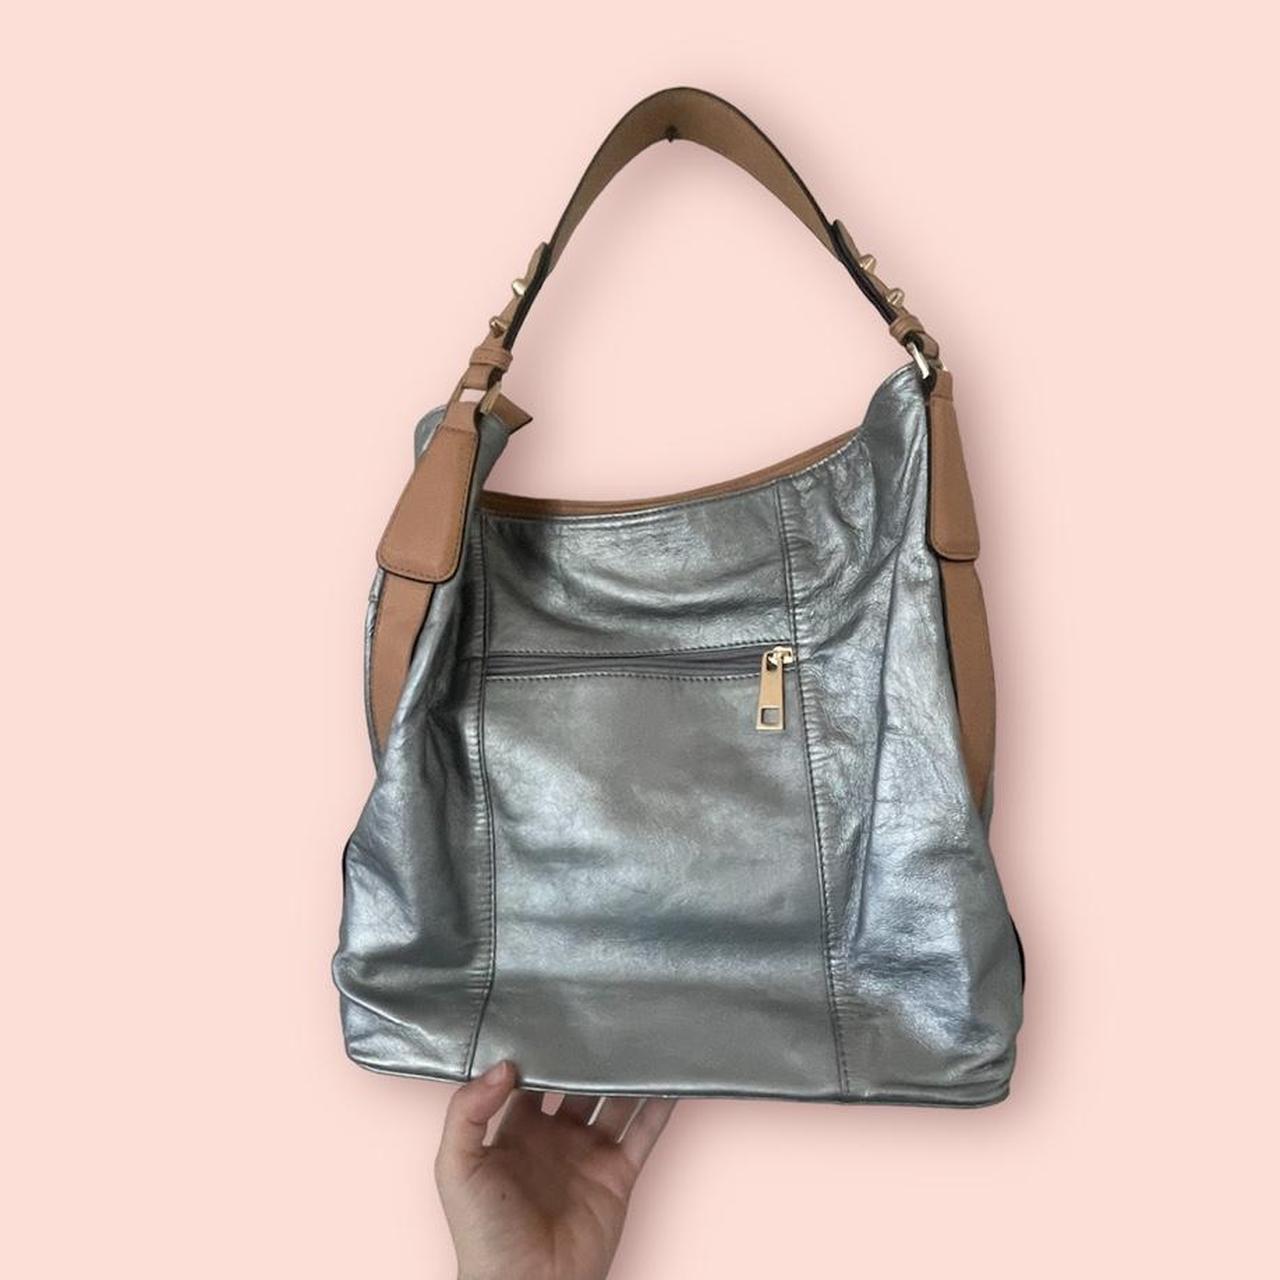 Women's Silver Handbags + FREE SHIPPING, Bags